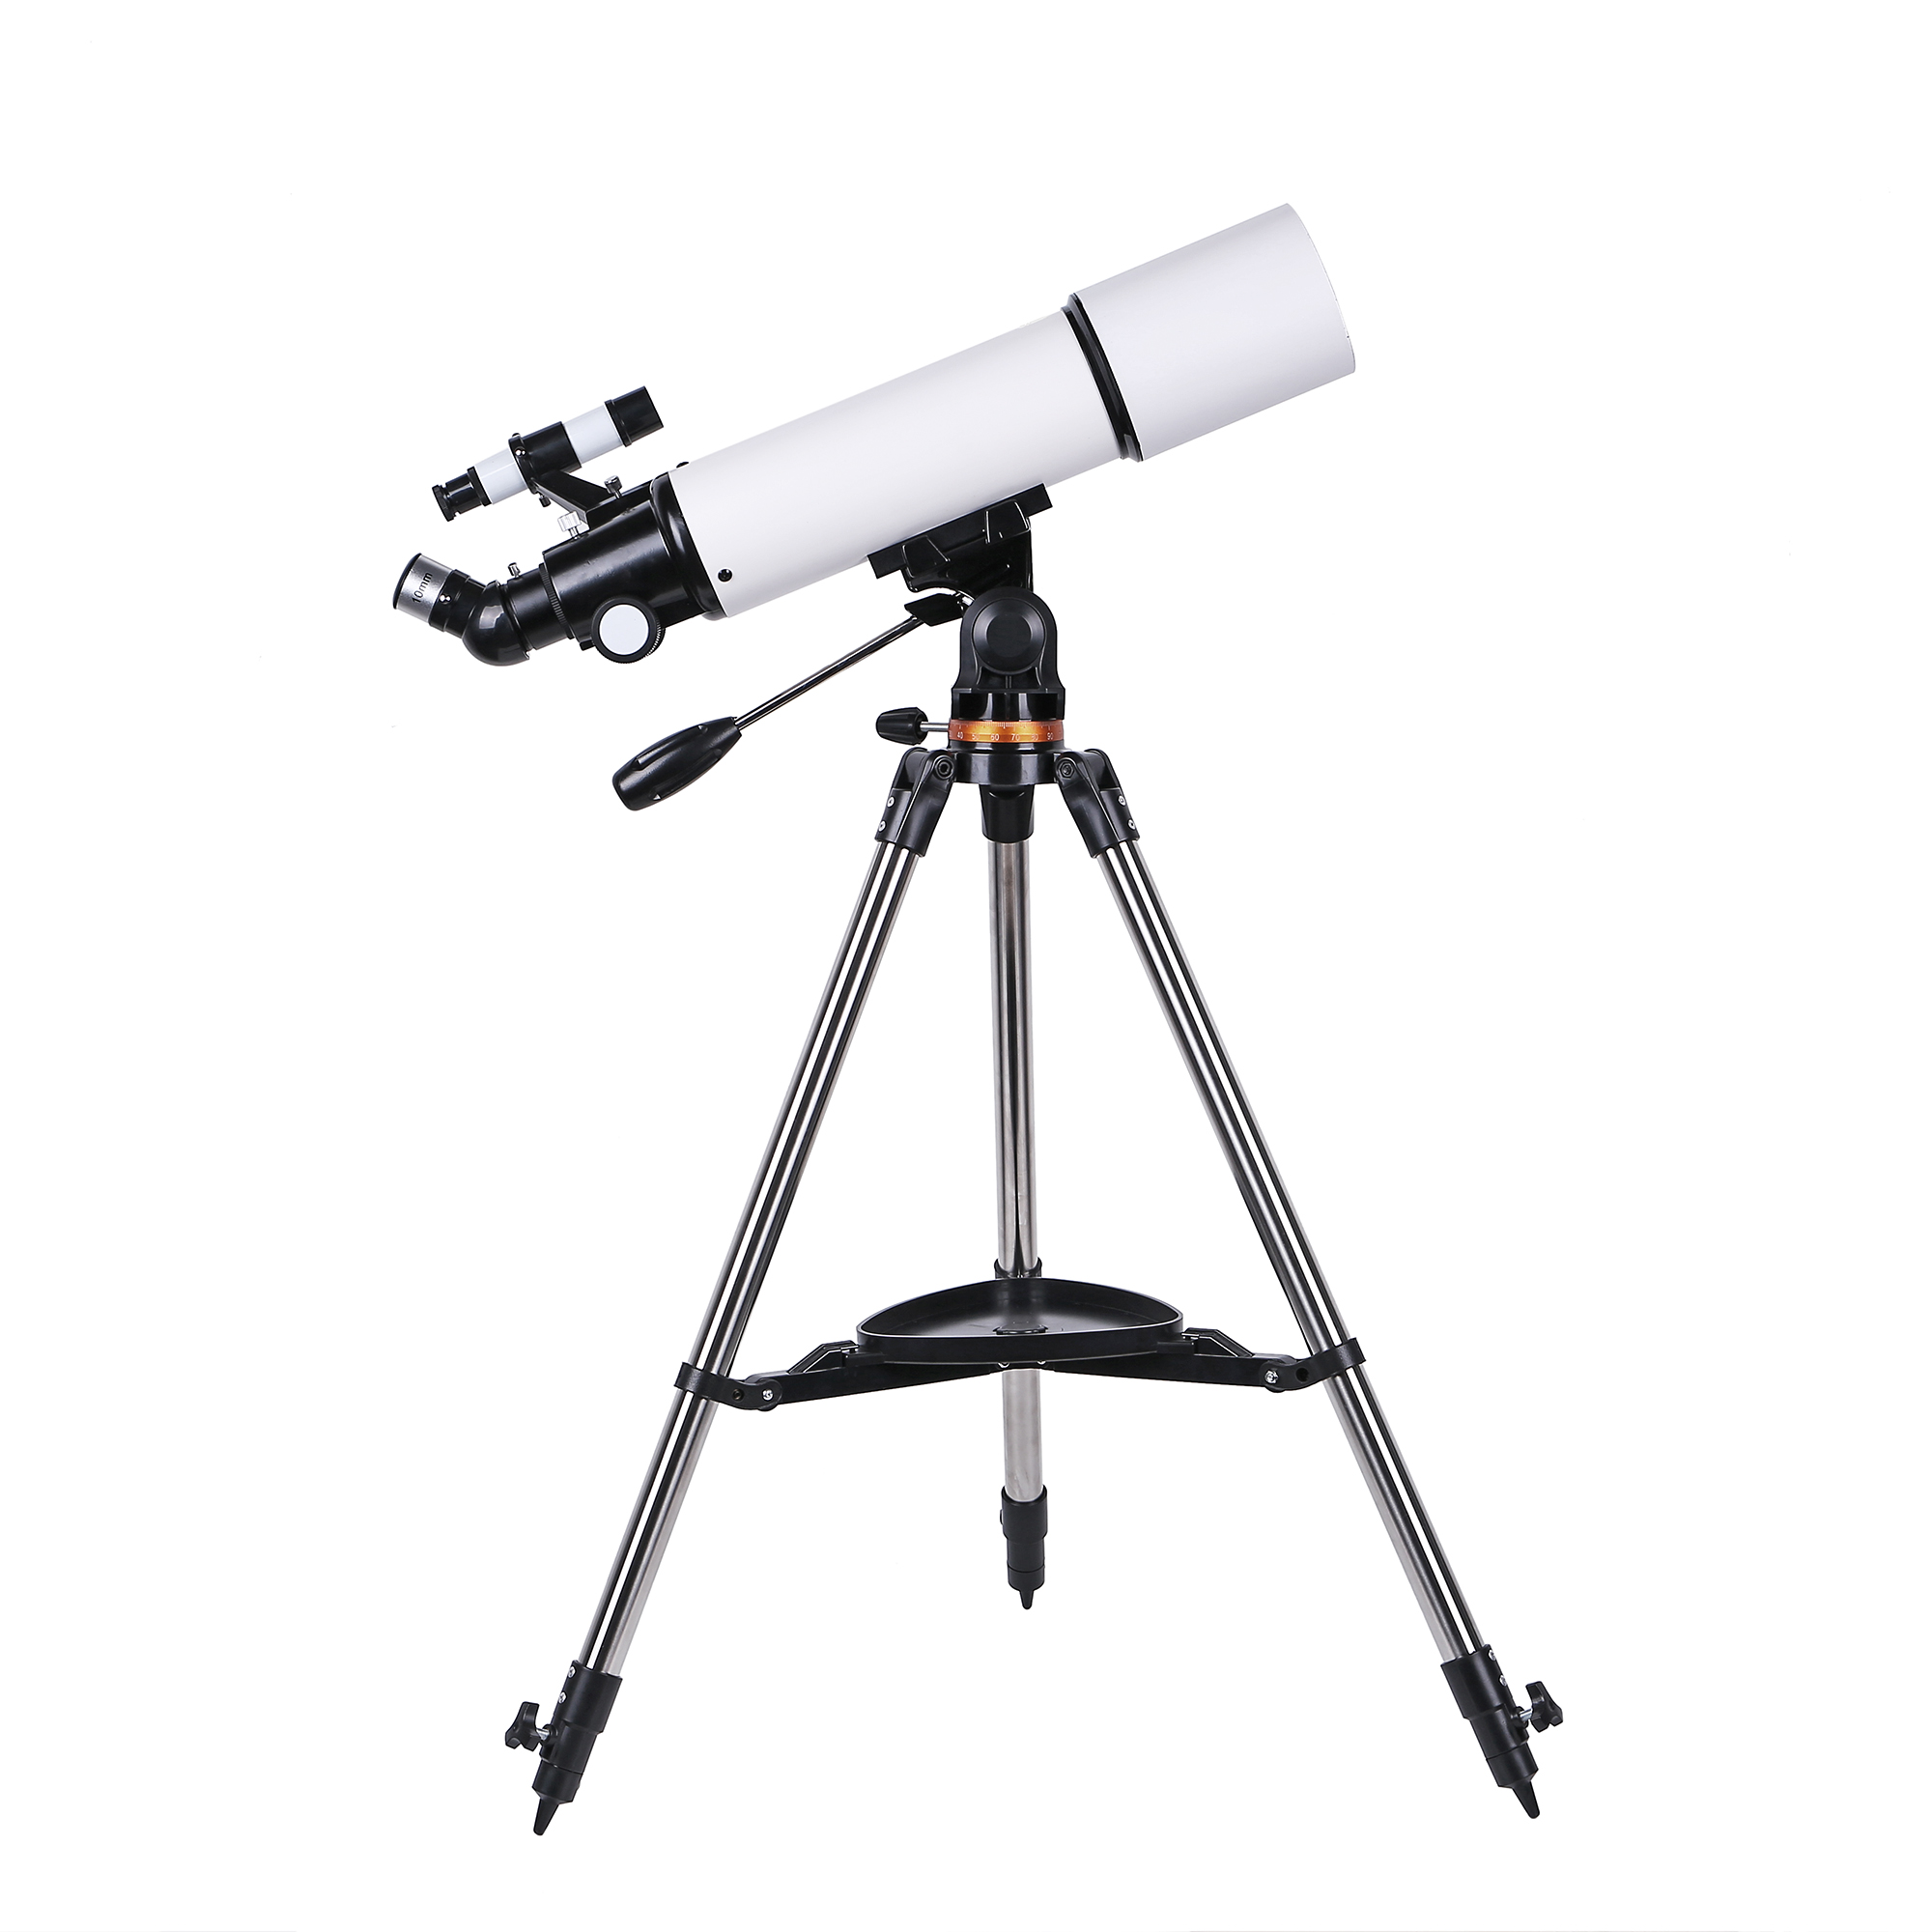 2020新款50080高清高倍天文望远镜专业观星观月观景天地两用详情图2